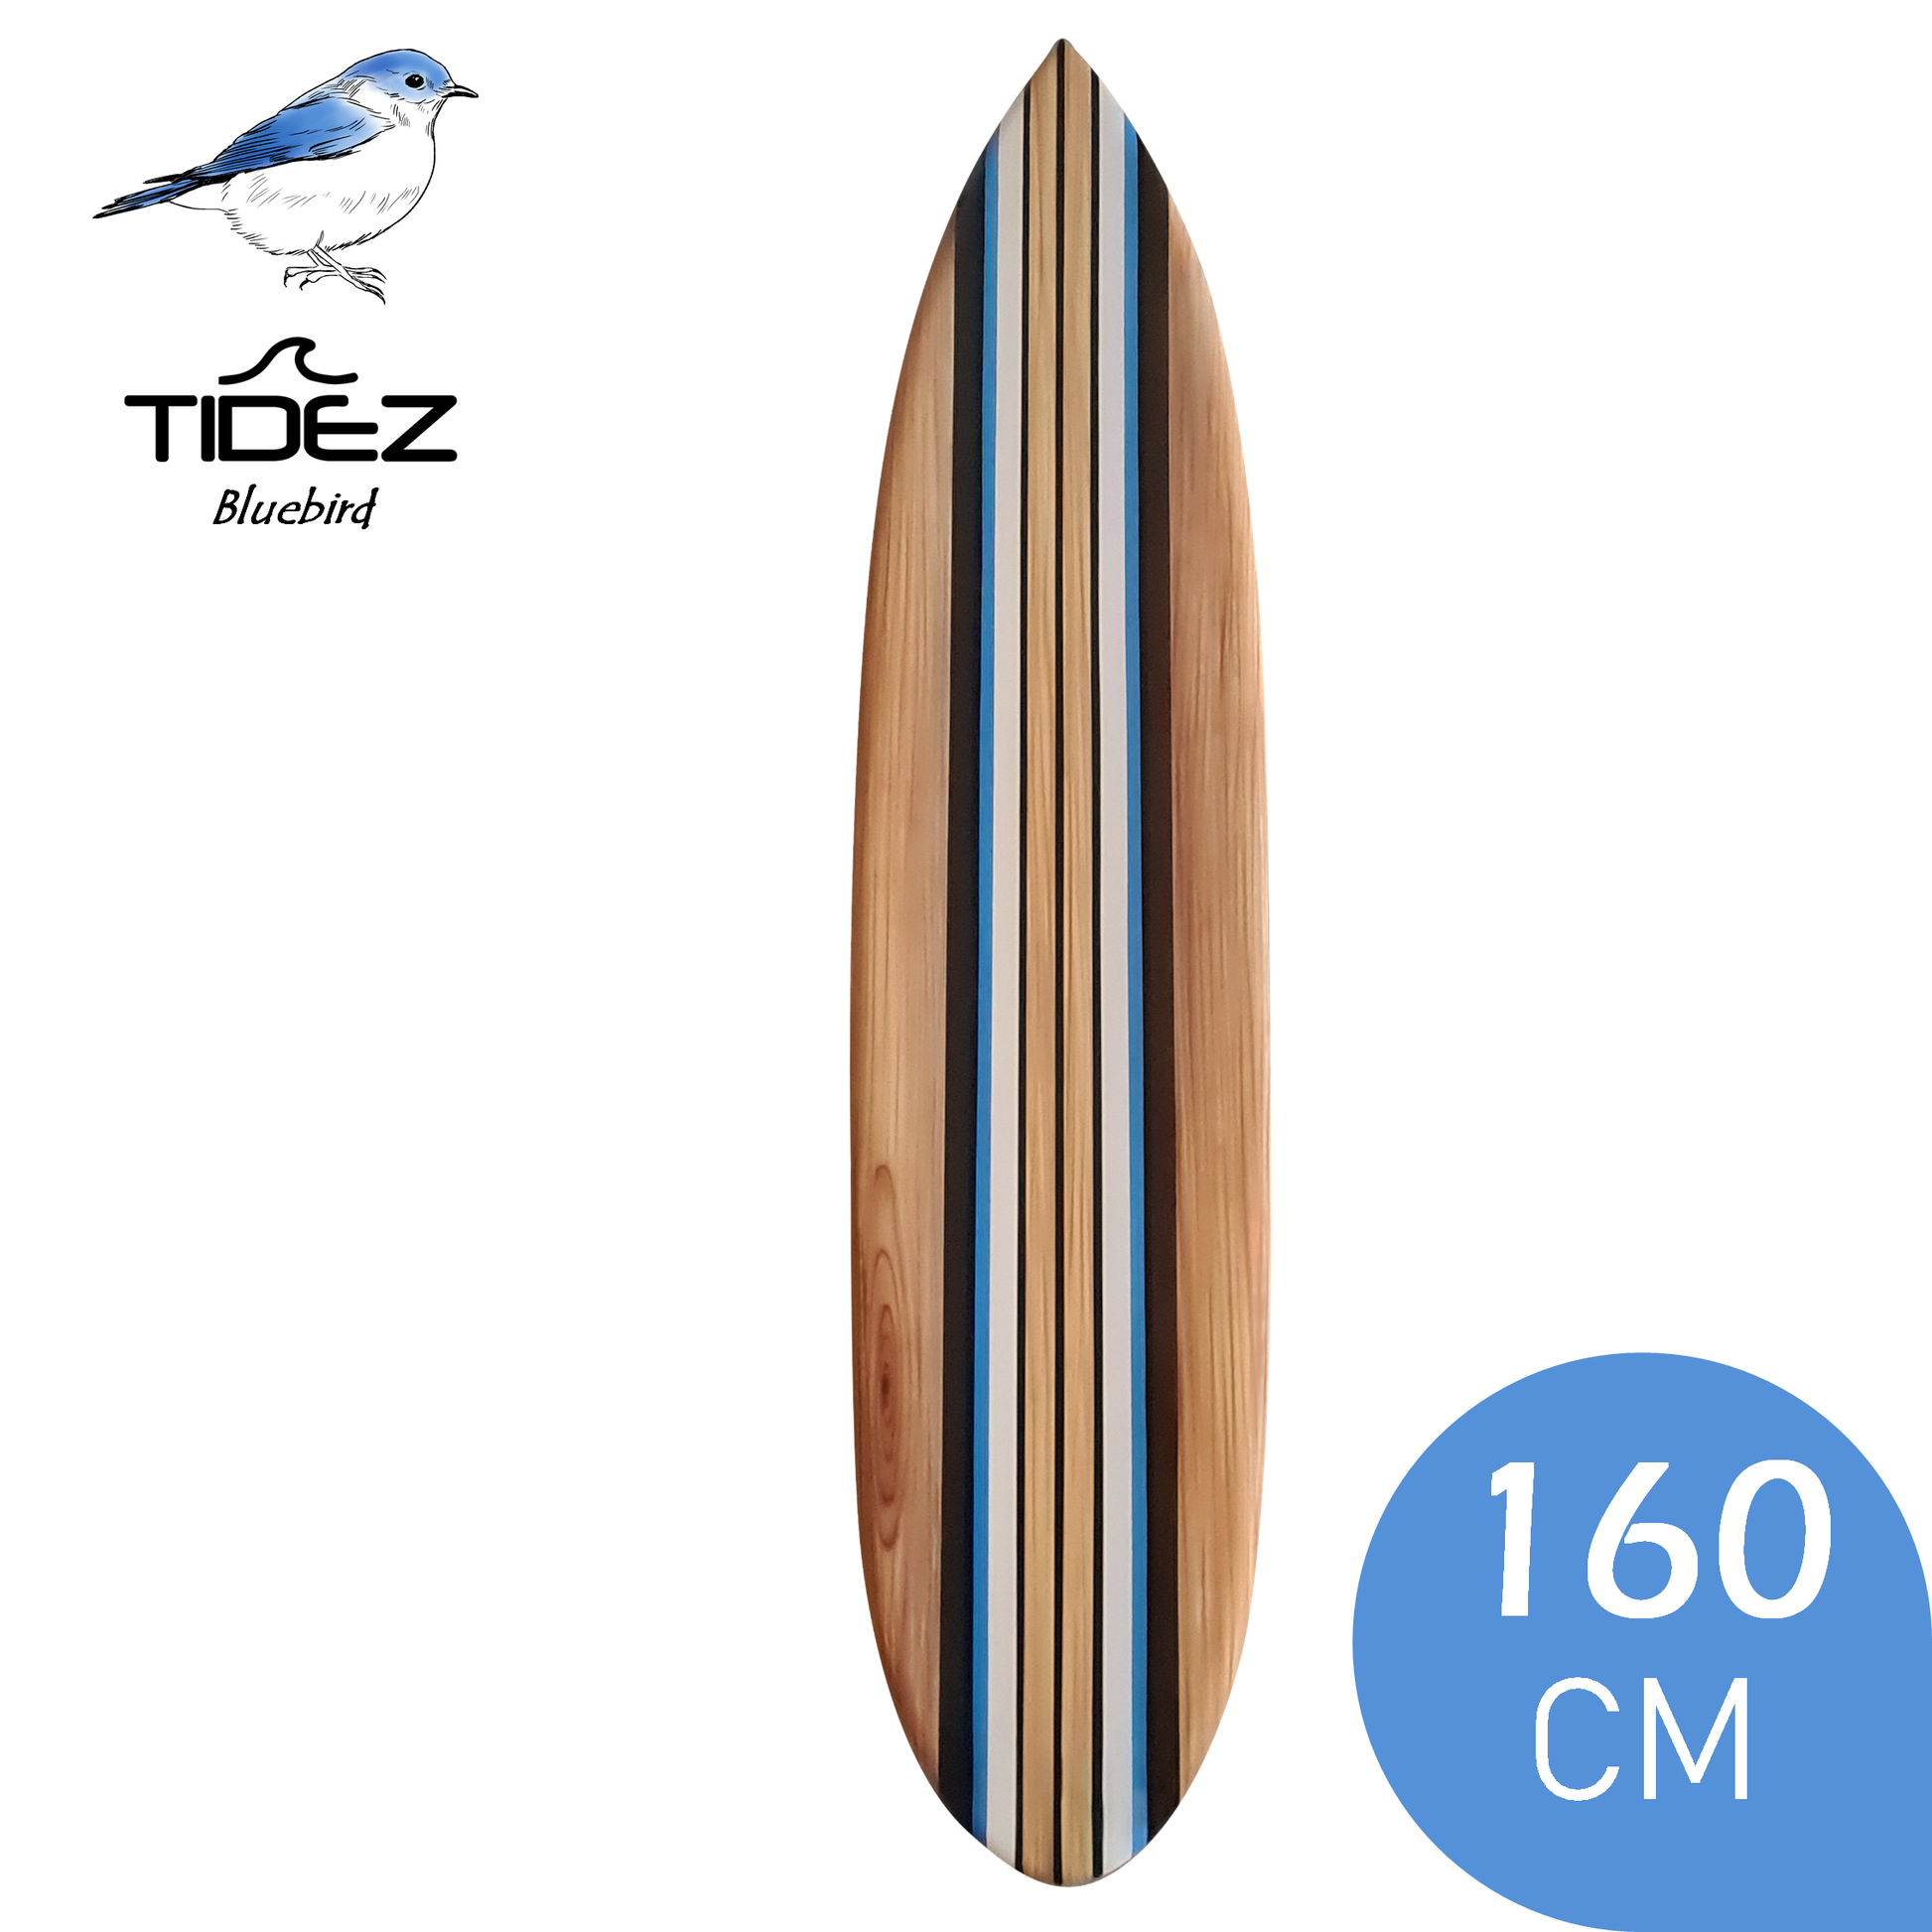 bros Ontwikkelen Niet essentieel Tidez Bluebird 160cm - Decoratieve, houten surfplank